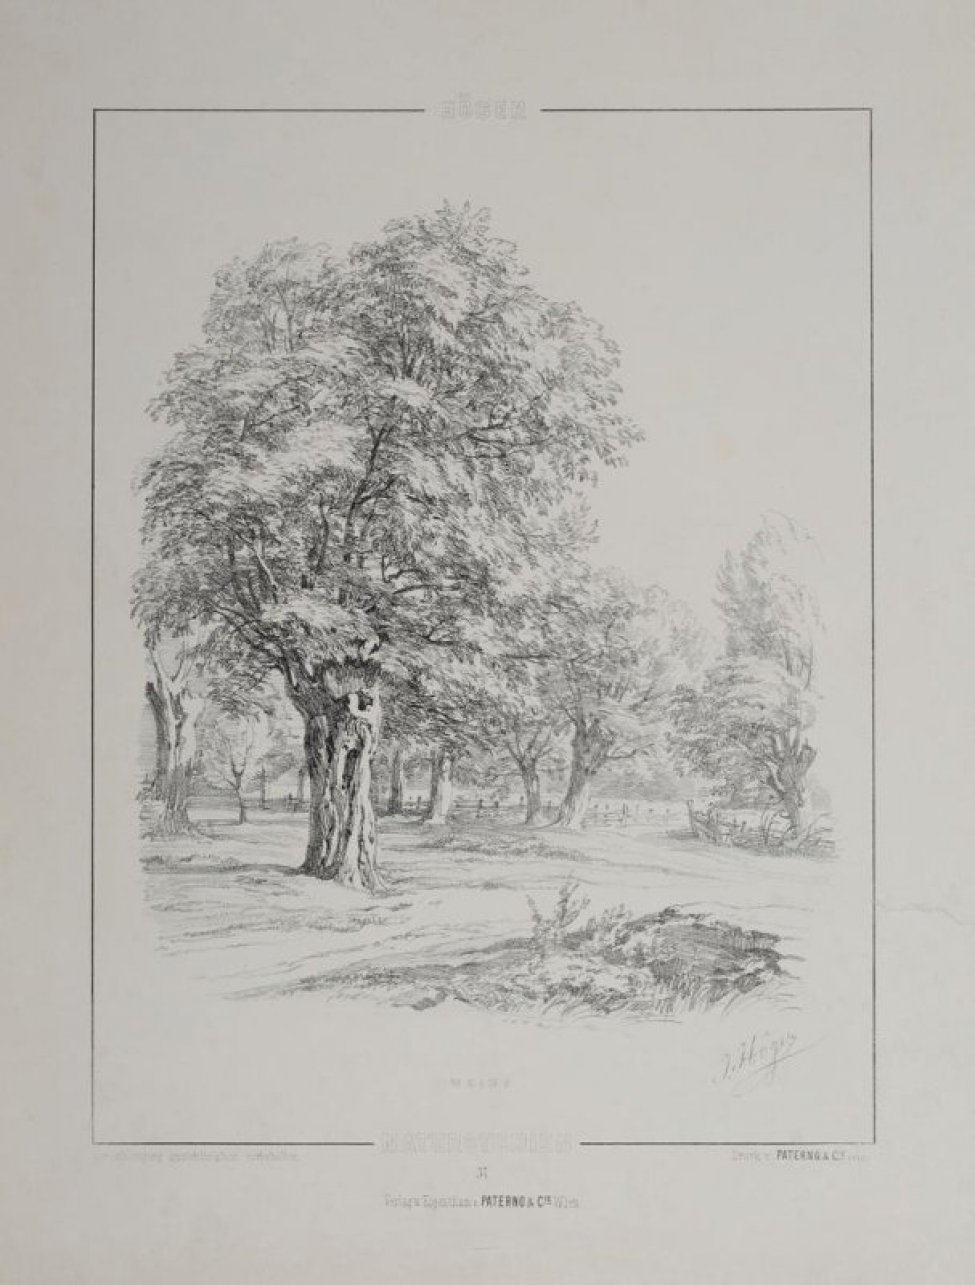 В черной линейной рамке эскиз: в центре листа на поляне изображена ива с пышной, высокой кроной. На втором плане у забора - несколько одиночных деревьев. Под гравюрой - текст.